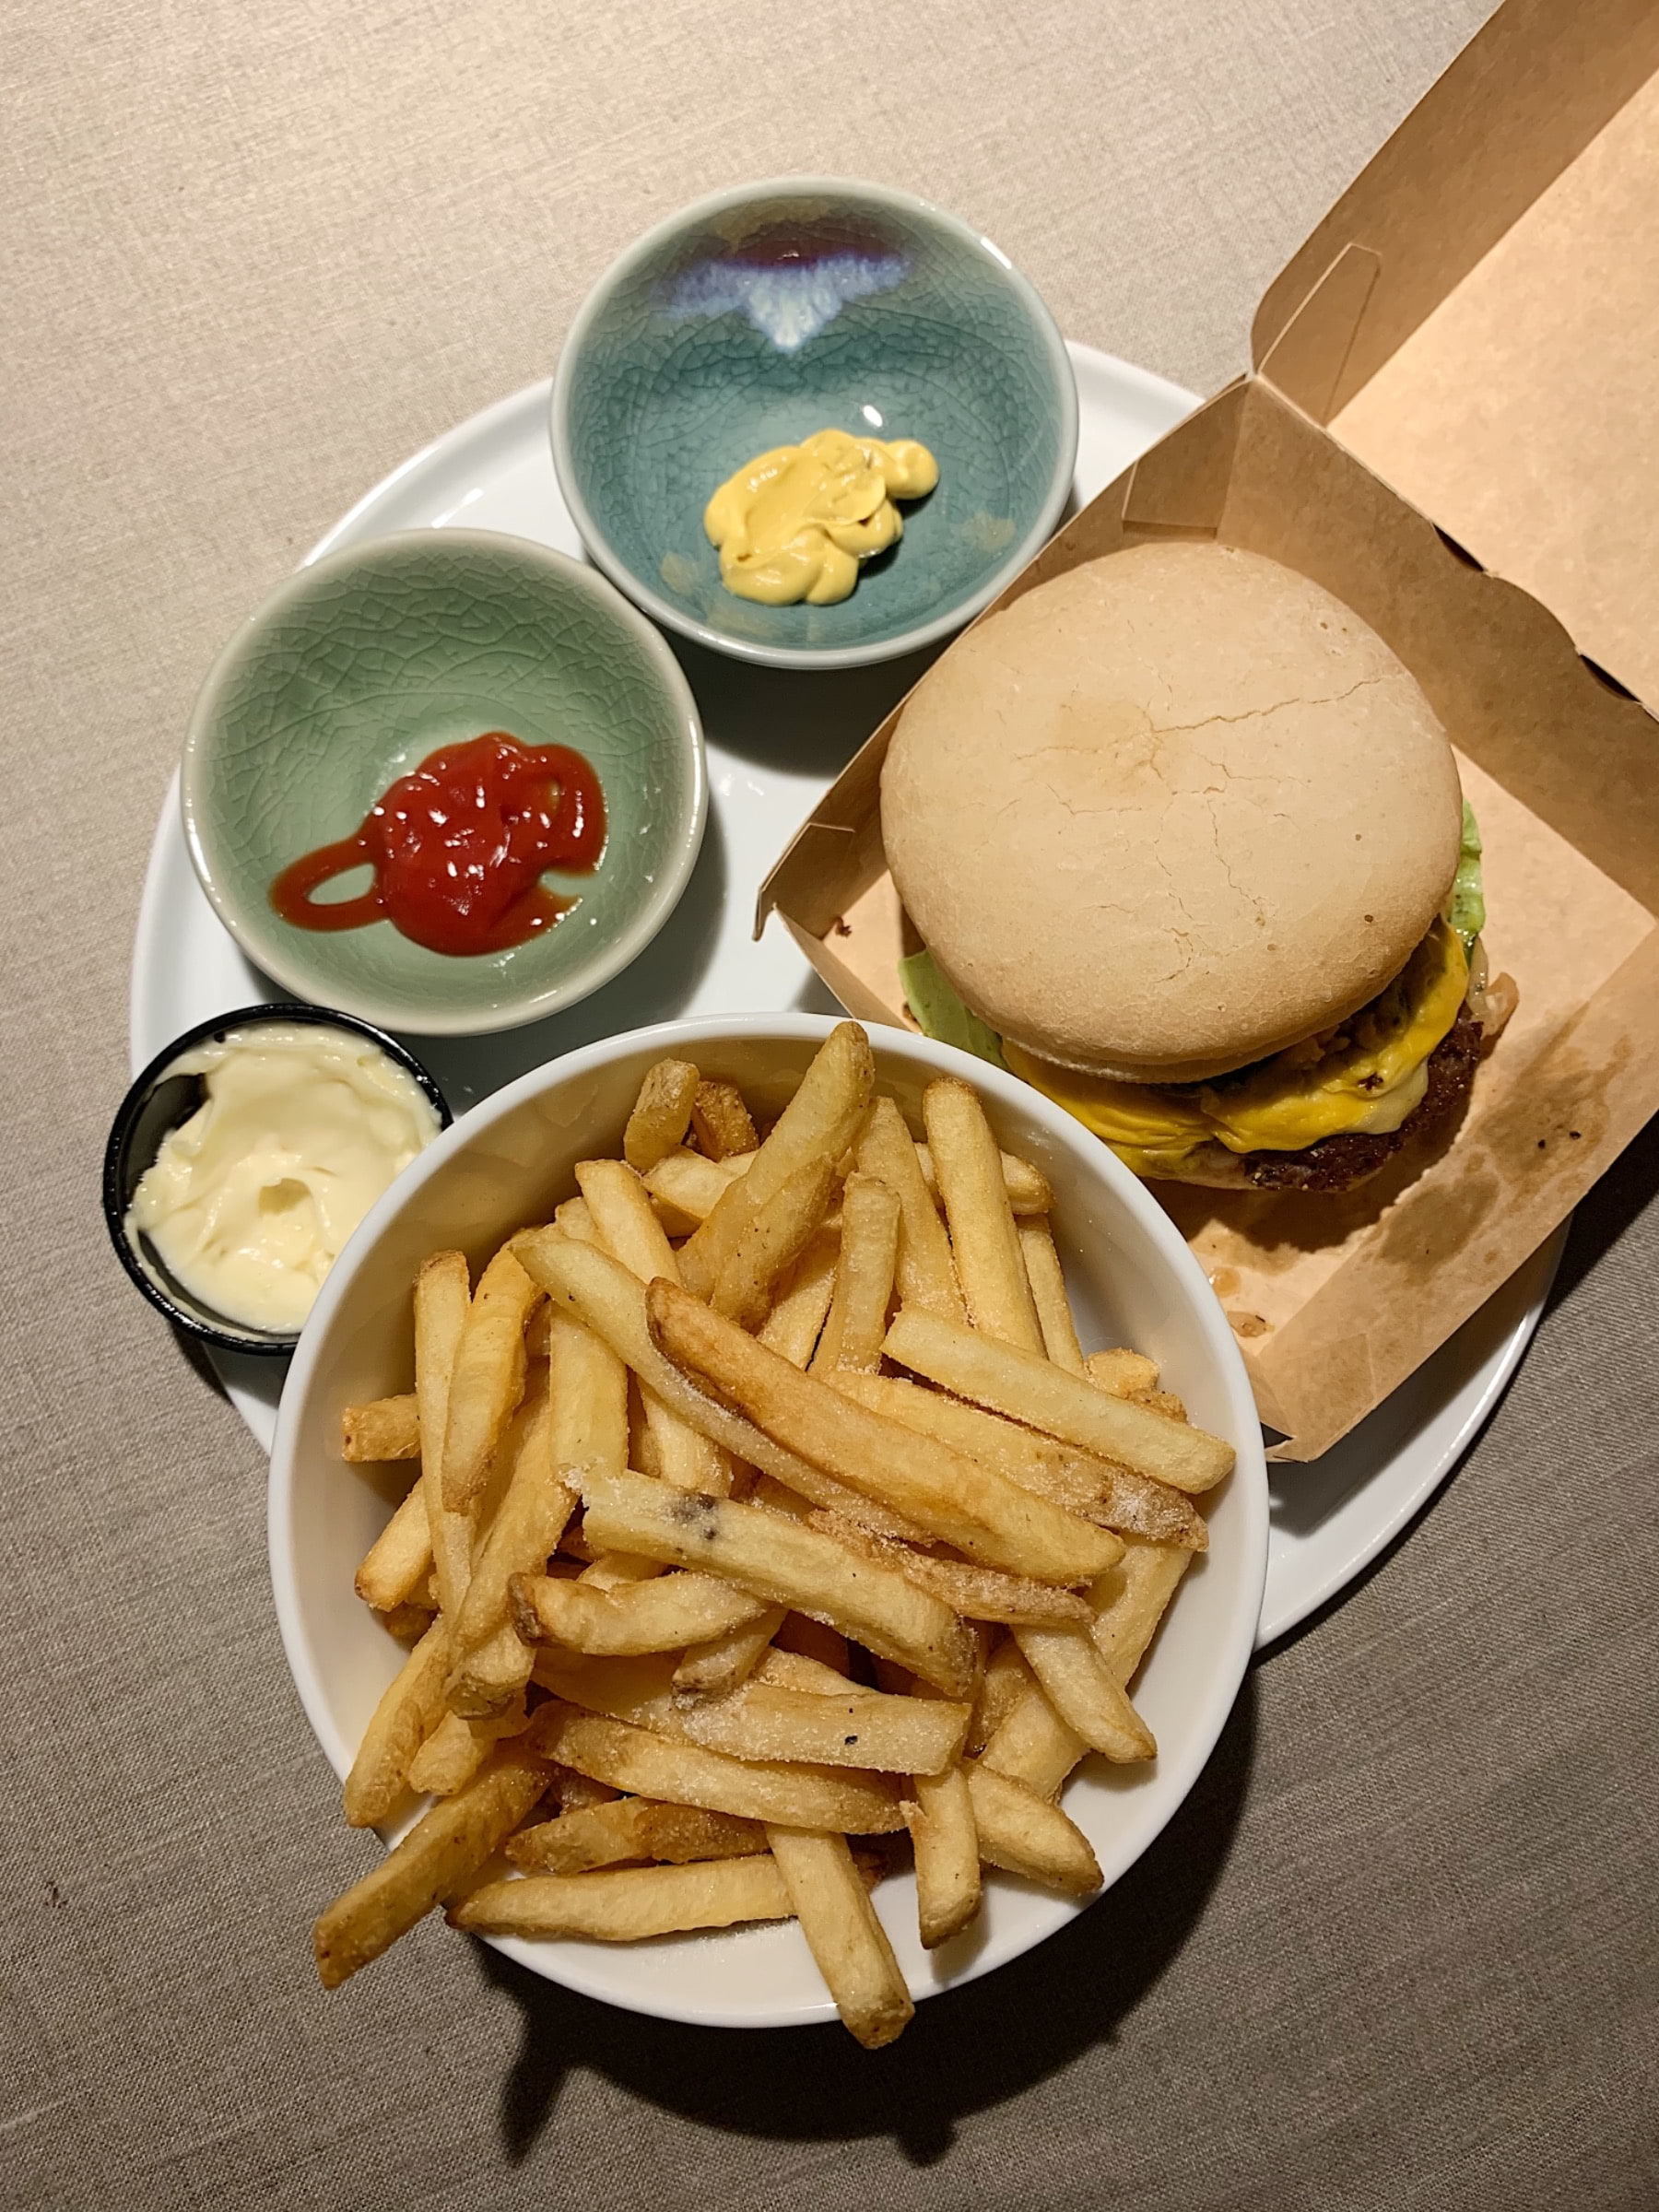 Hot Chili Jalapeno Cheeseburger med Original Fries och Majjo – Bild från Burgers & Beer Rörstrandsgatan av Caroline S. (2021-02-09)